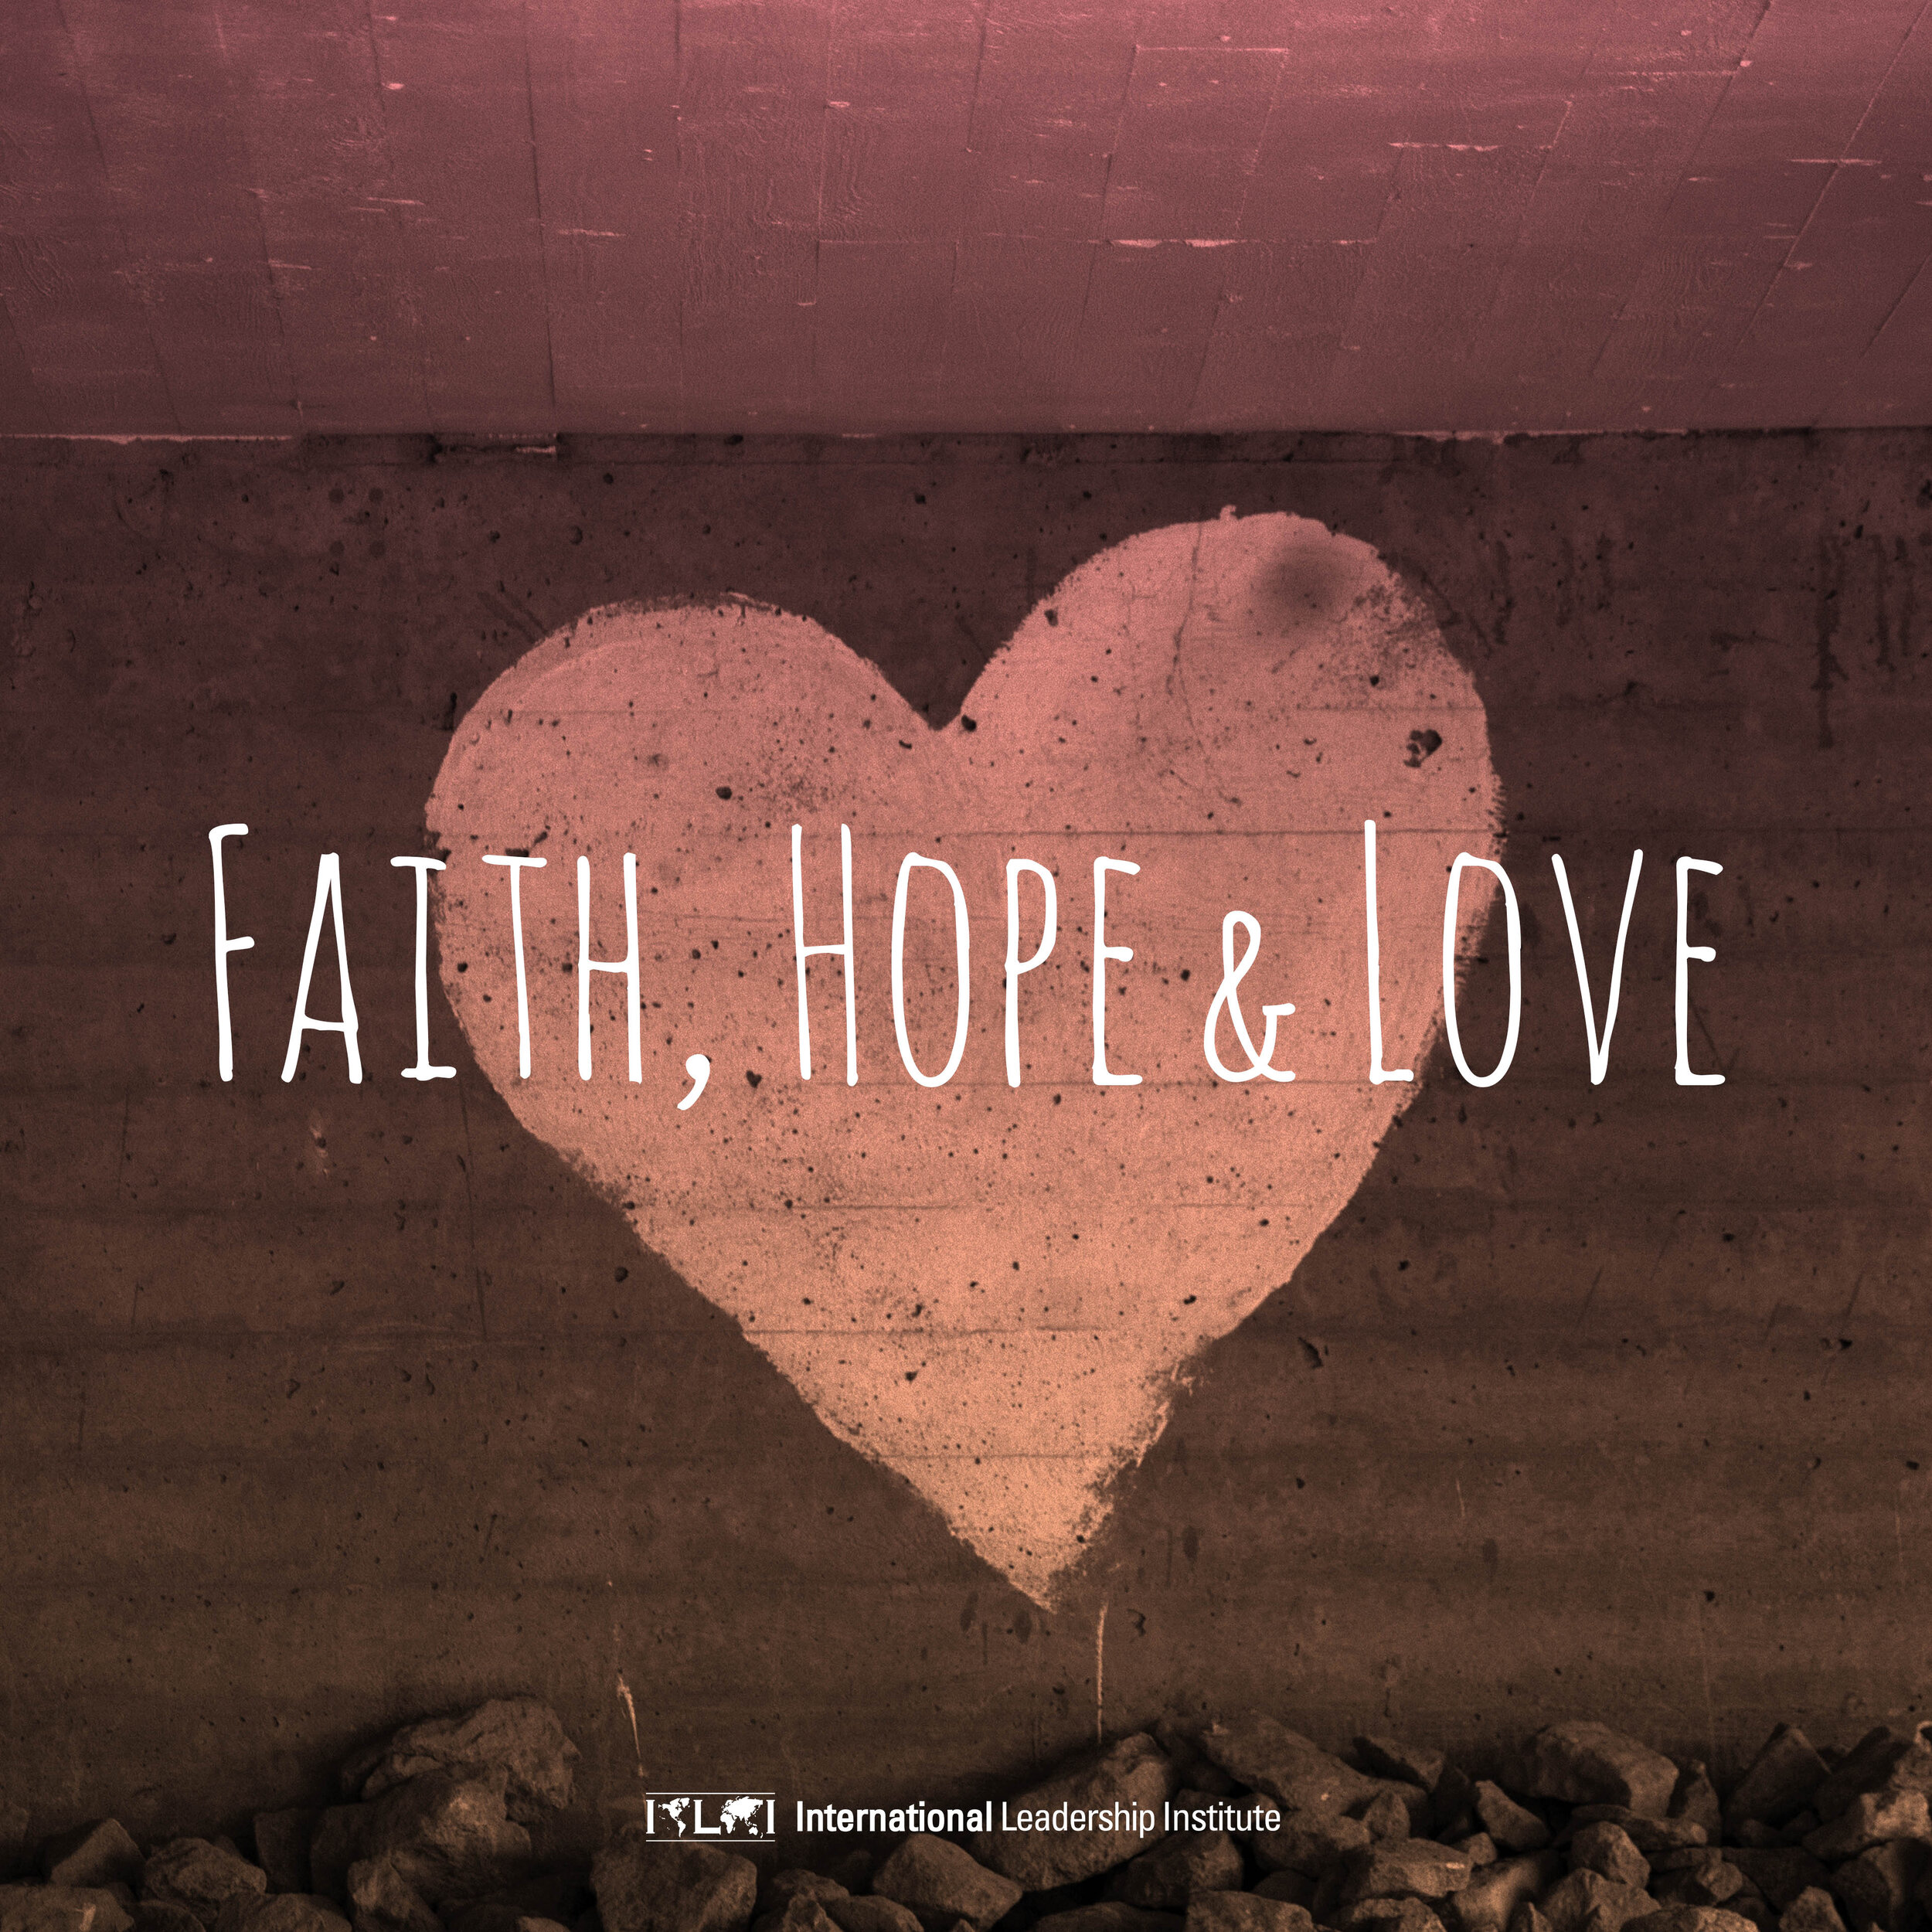 Faiths hope